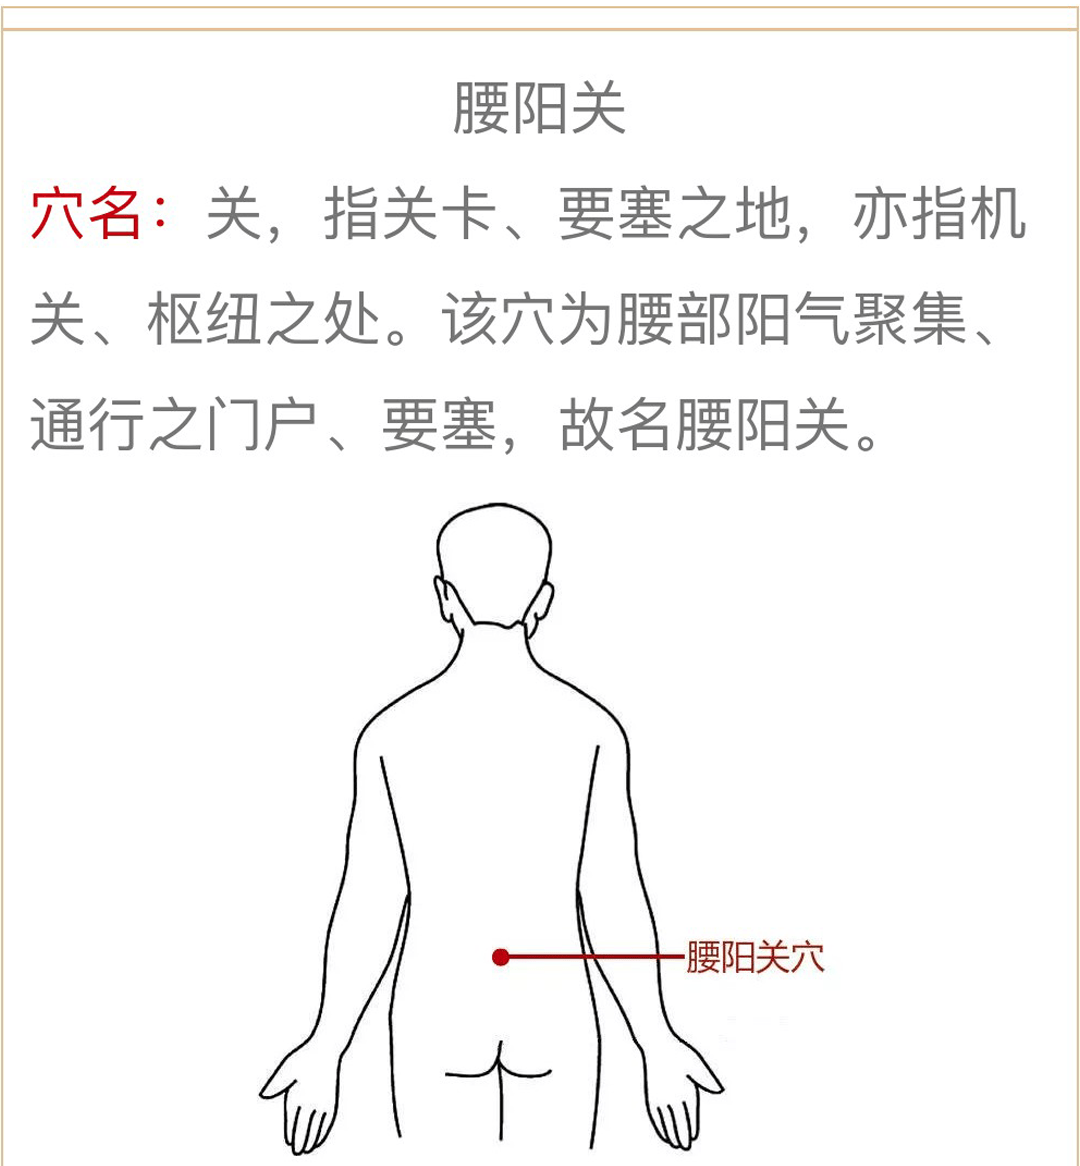 人体腰部示意图图解图片